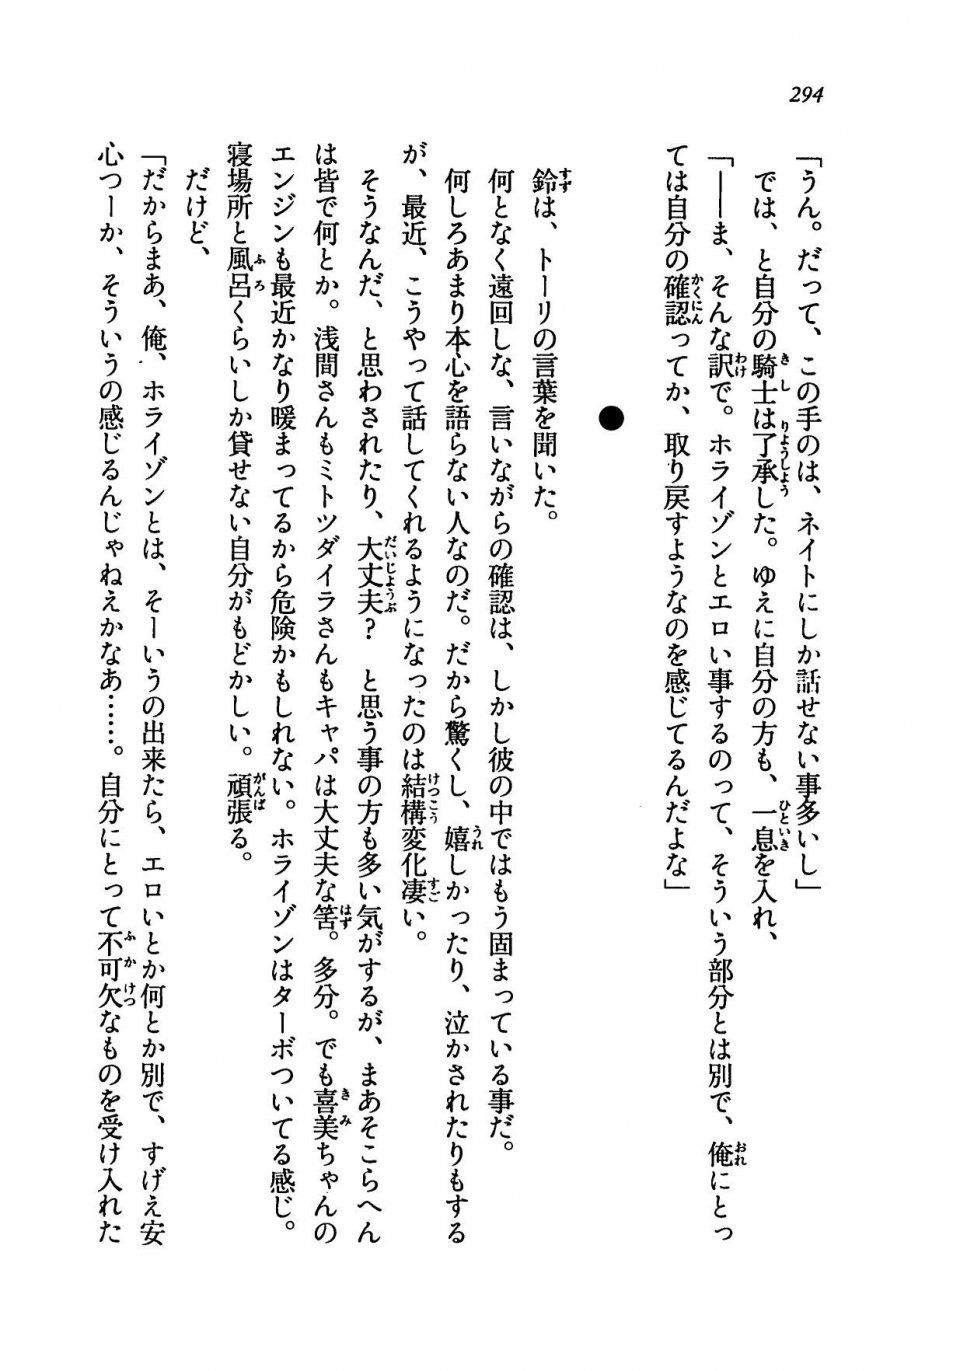 Kyoukai Senjou no Horizon LN Vol 19(8A) - Photo #294